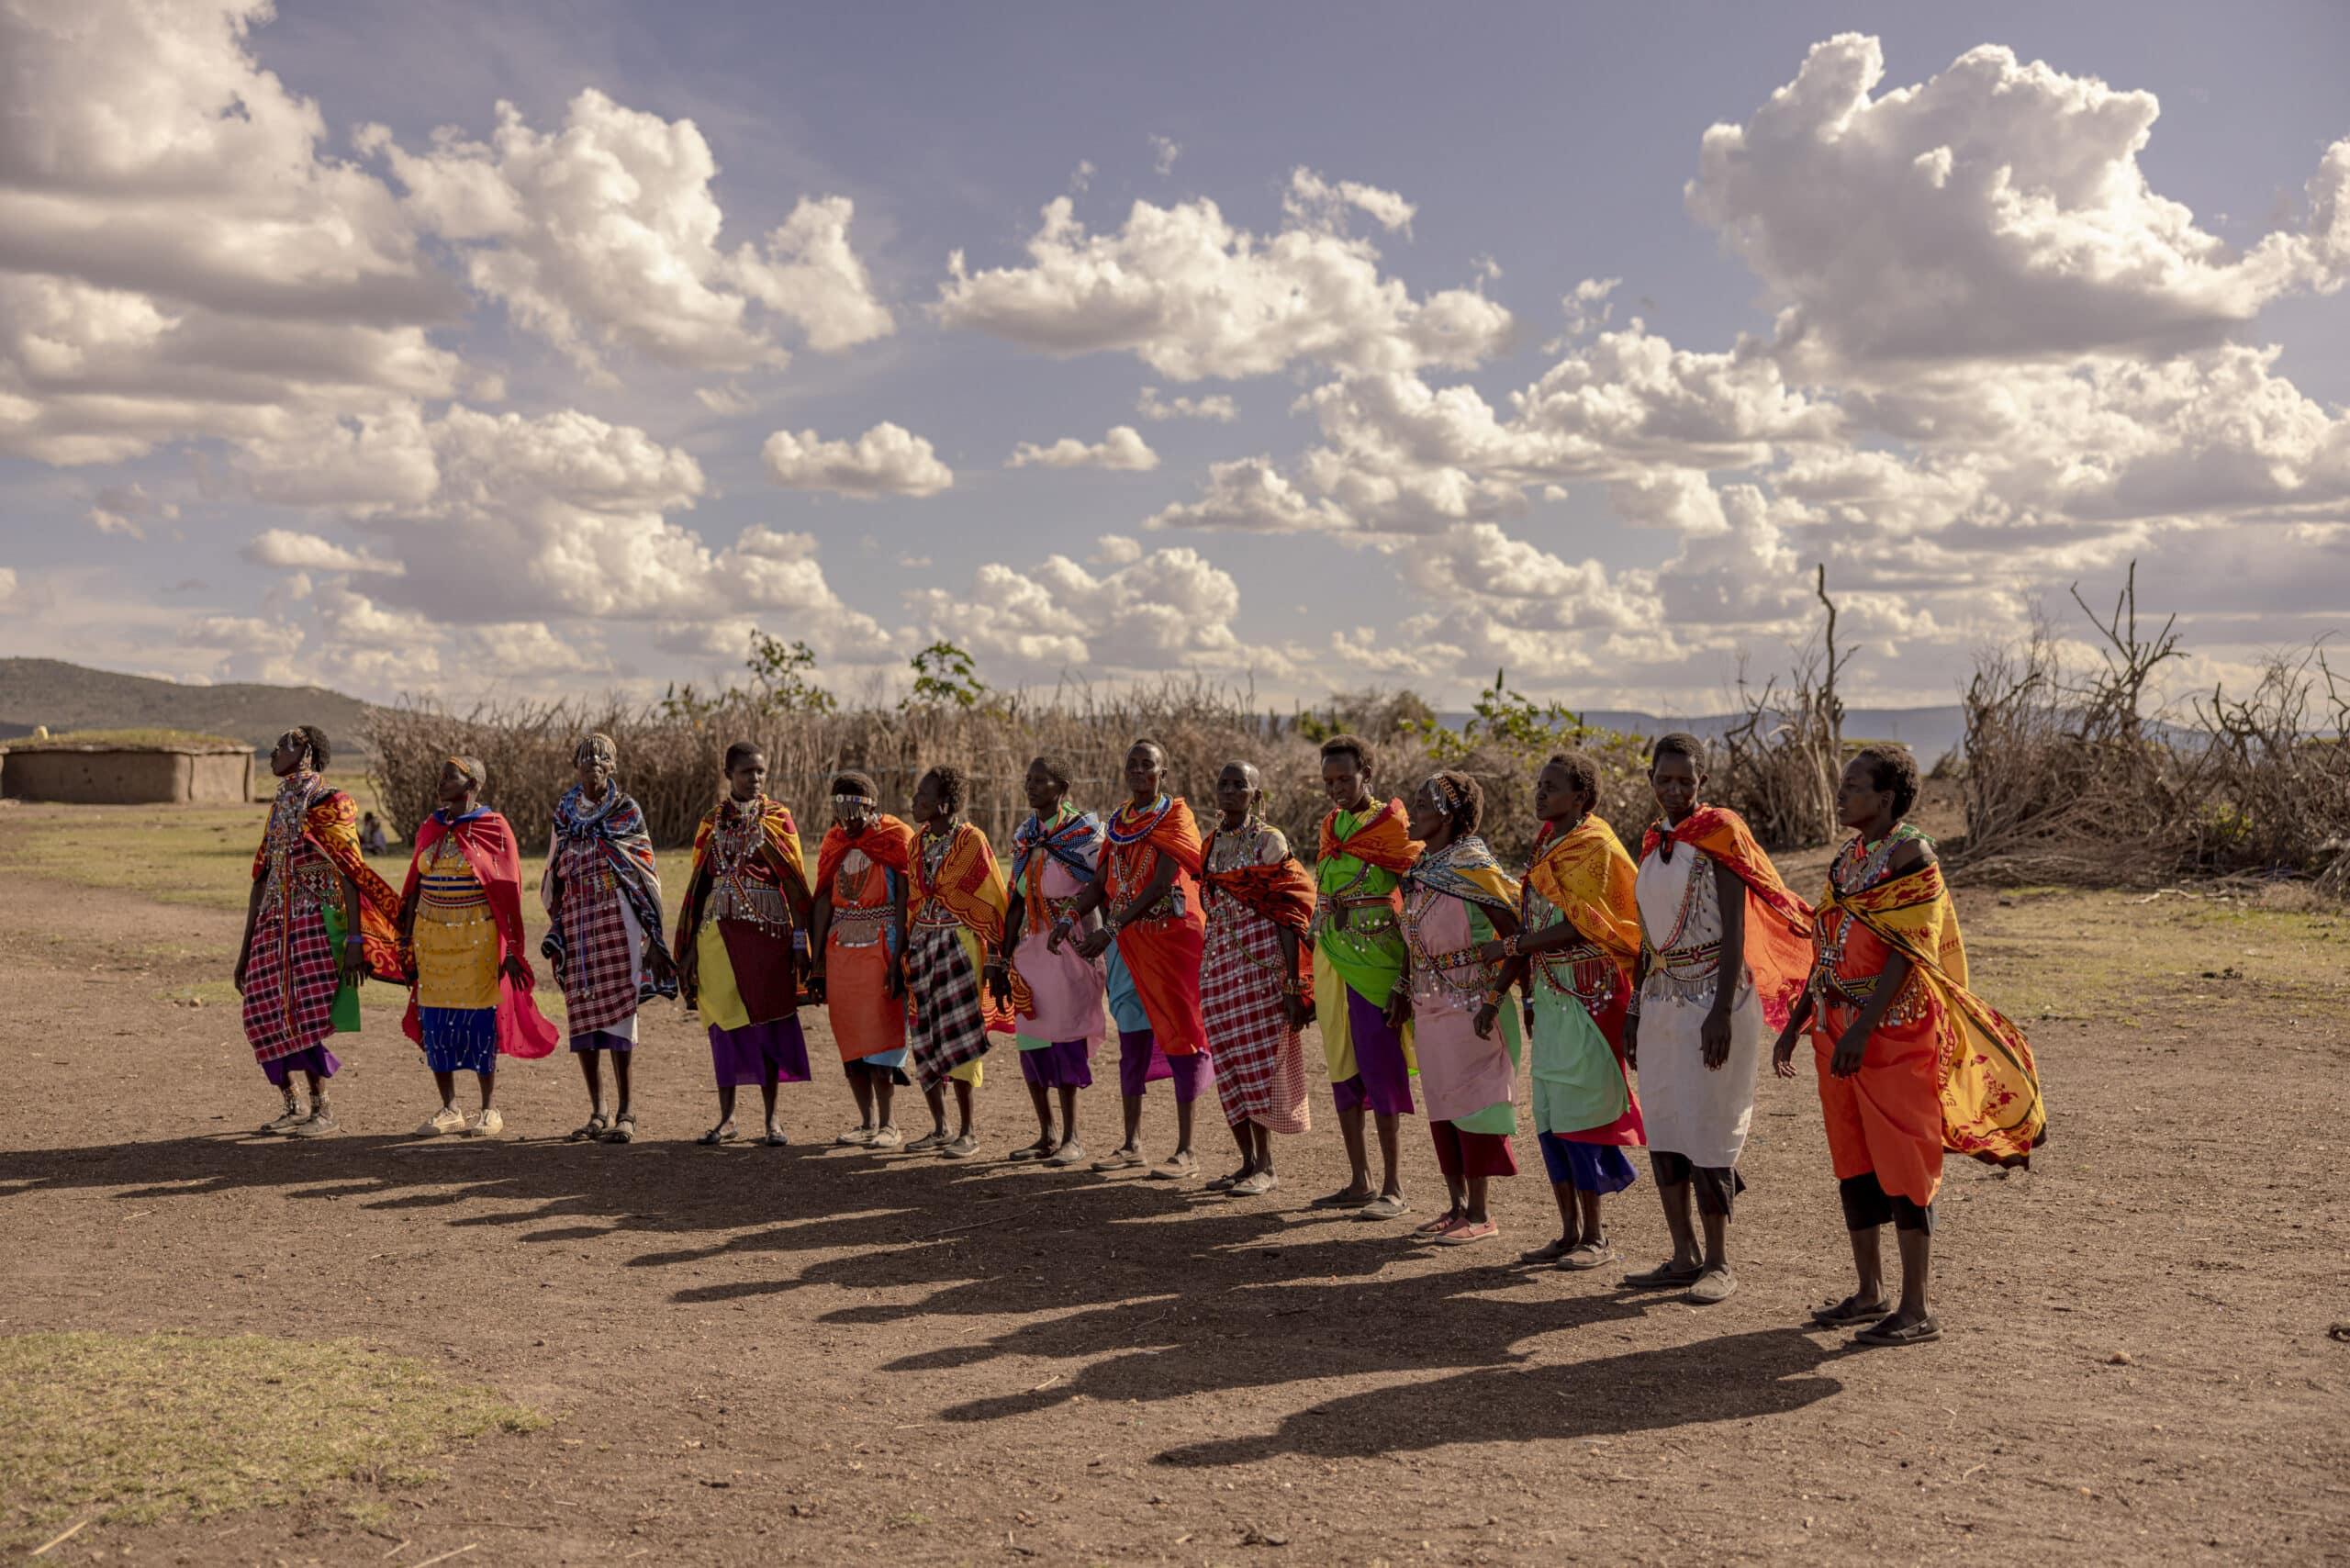 Eine Gruppe von Massai-Frauen in traditioneller, farbenfroher Kleidung steht in einer Reihe in einer staubigen Savanne unter einem bewölkten Himmel, hält Händchen und scheint mitten im Tanz oder einer Feier zu sein. © Fotografie Tomas Rodriguez